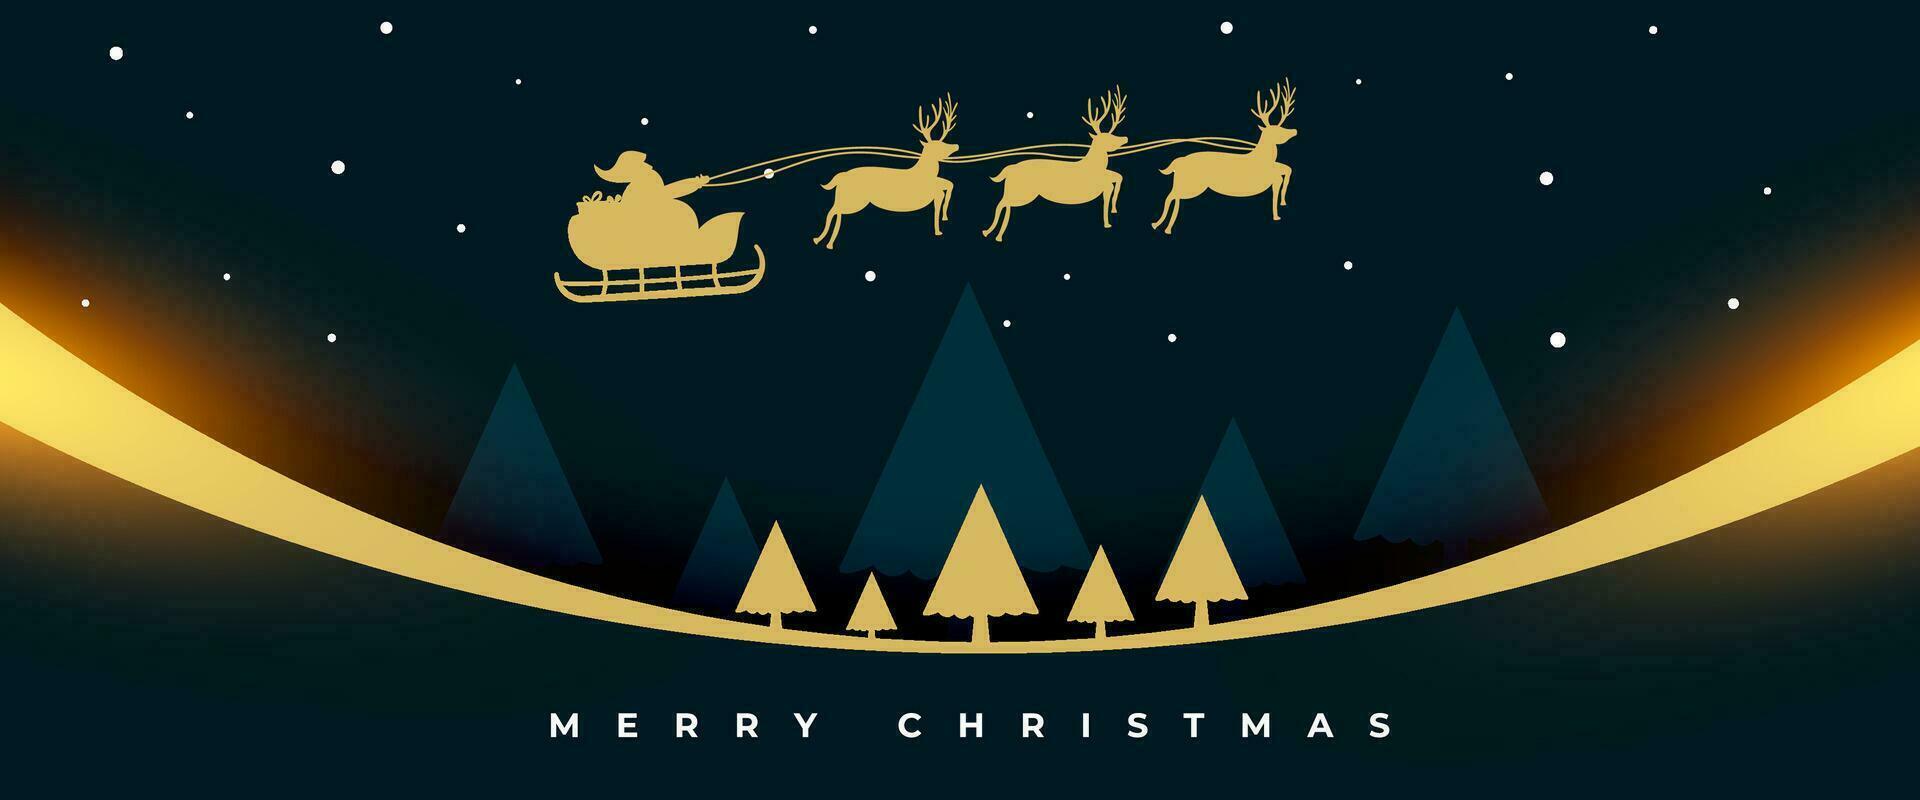 vrolijk Kerstmis vooravond uitnodiging banier met vliegend de kerstman slee vector